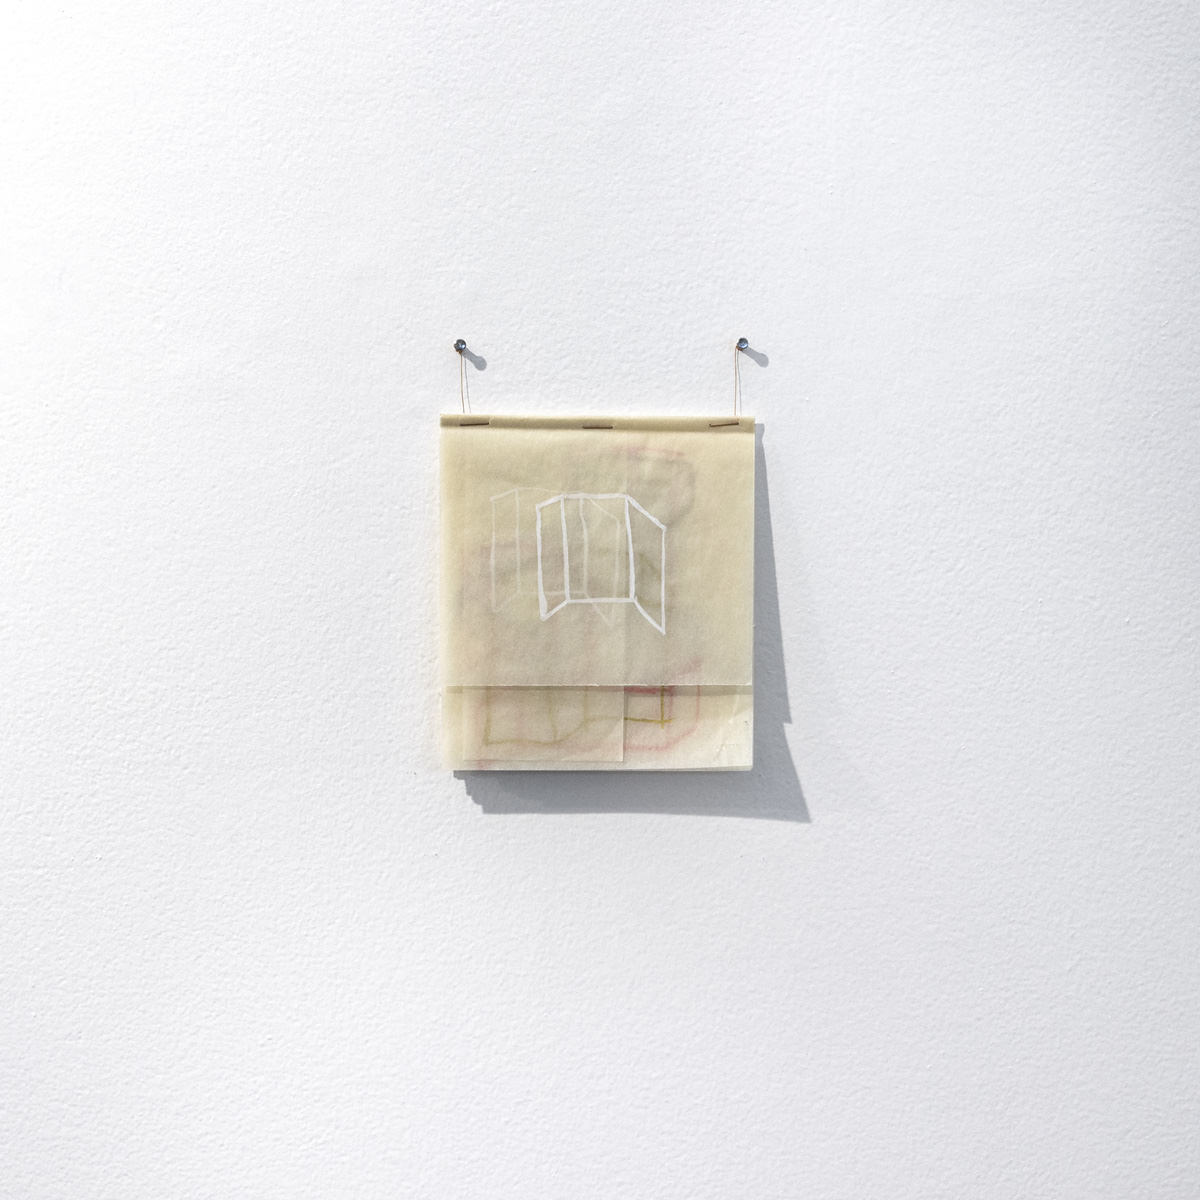 Флавия Рибейро, Рисование, 2019 - гуашь, бронзовая пудра на двойном листе бумаги для рисования - 28,7 X 21 см. Фото: Раскрытие.